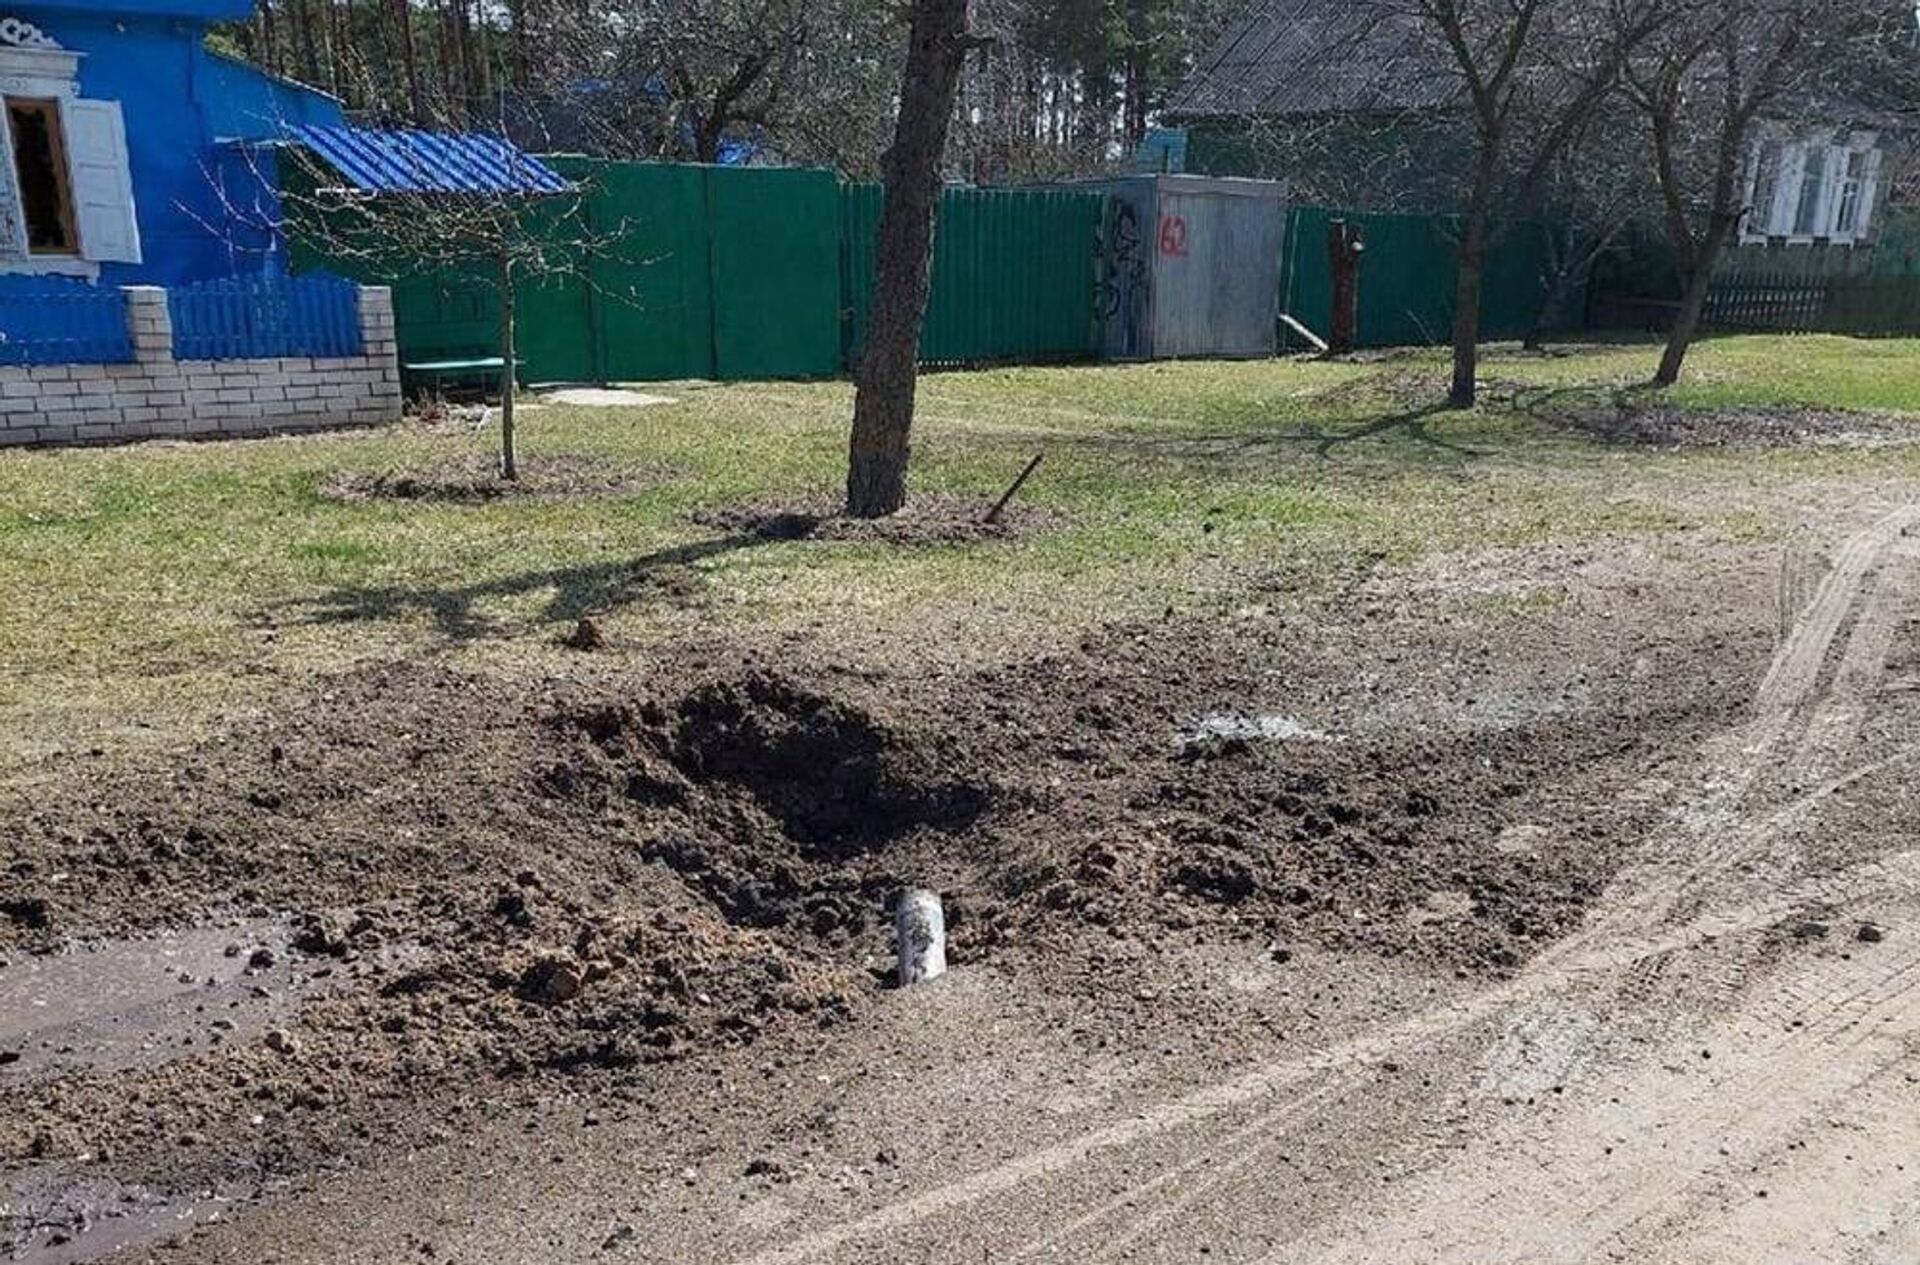 Воронка от взрыва снаряда в поселке Климово Брянской области, 14 апреля 2022 года  - Sputnik Latvija, 1920, 16.04.2022